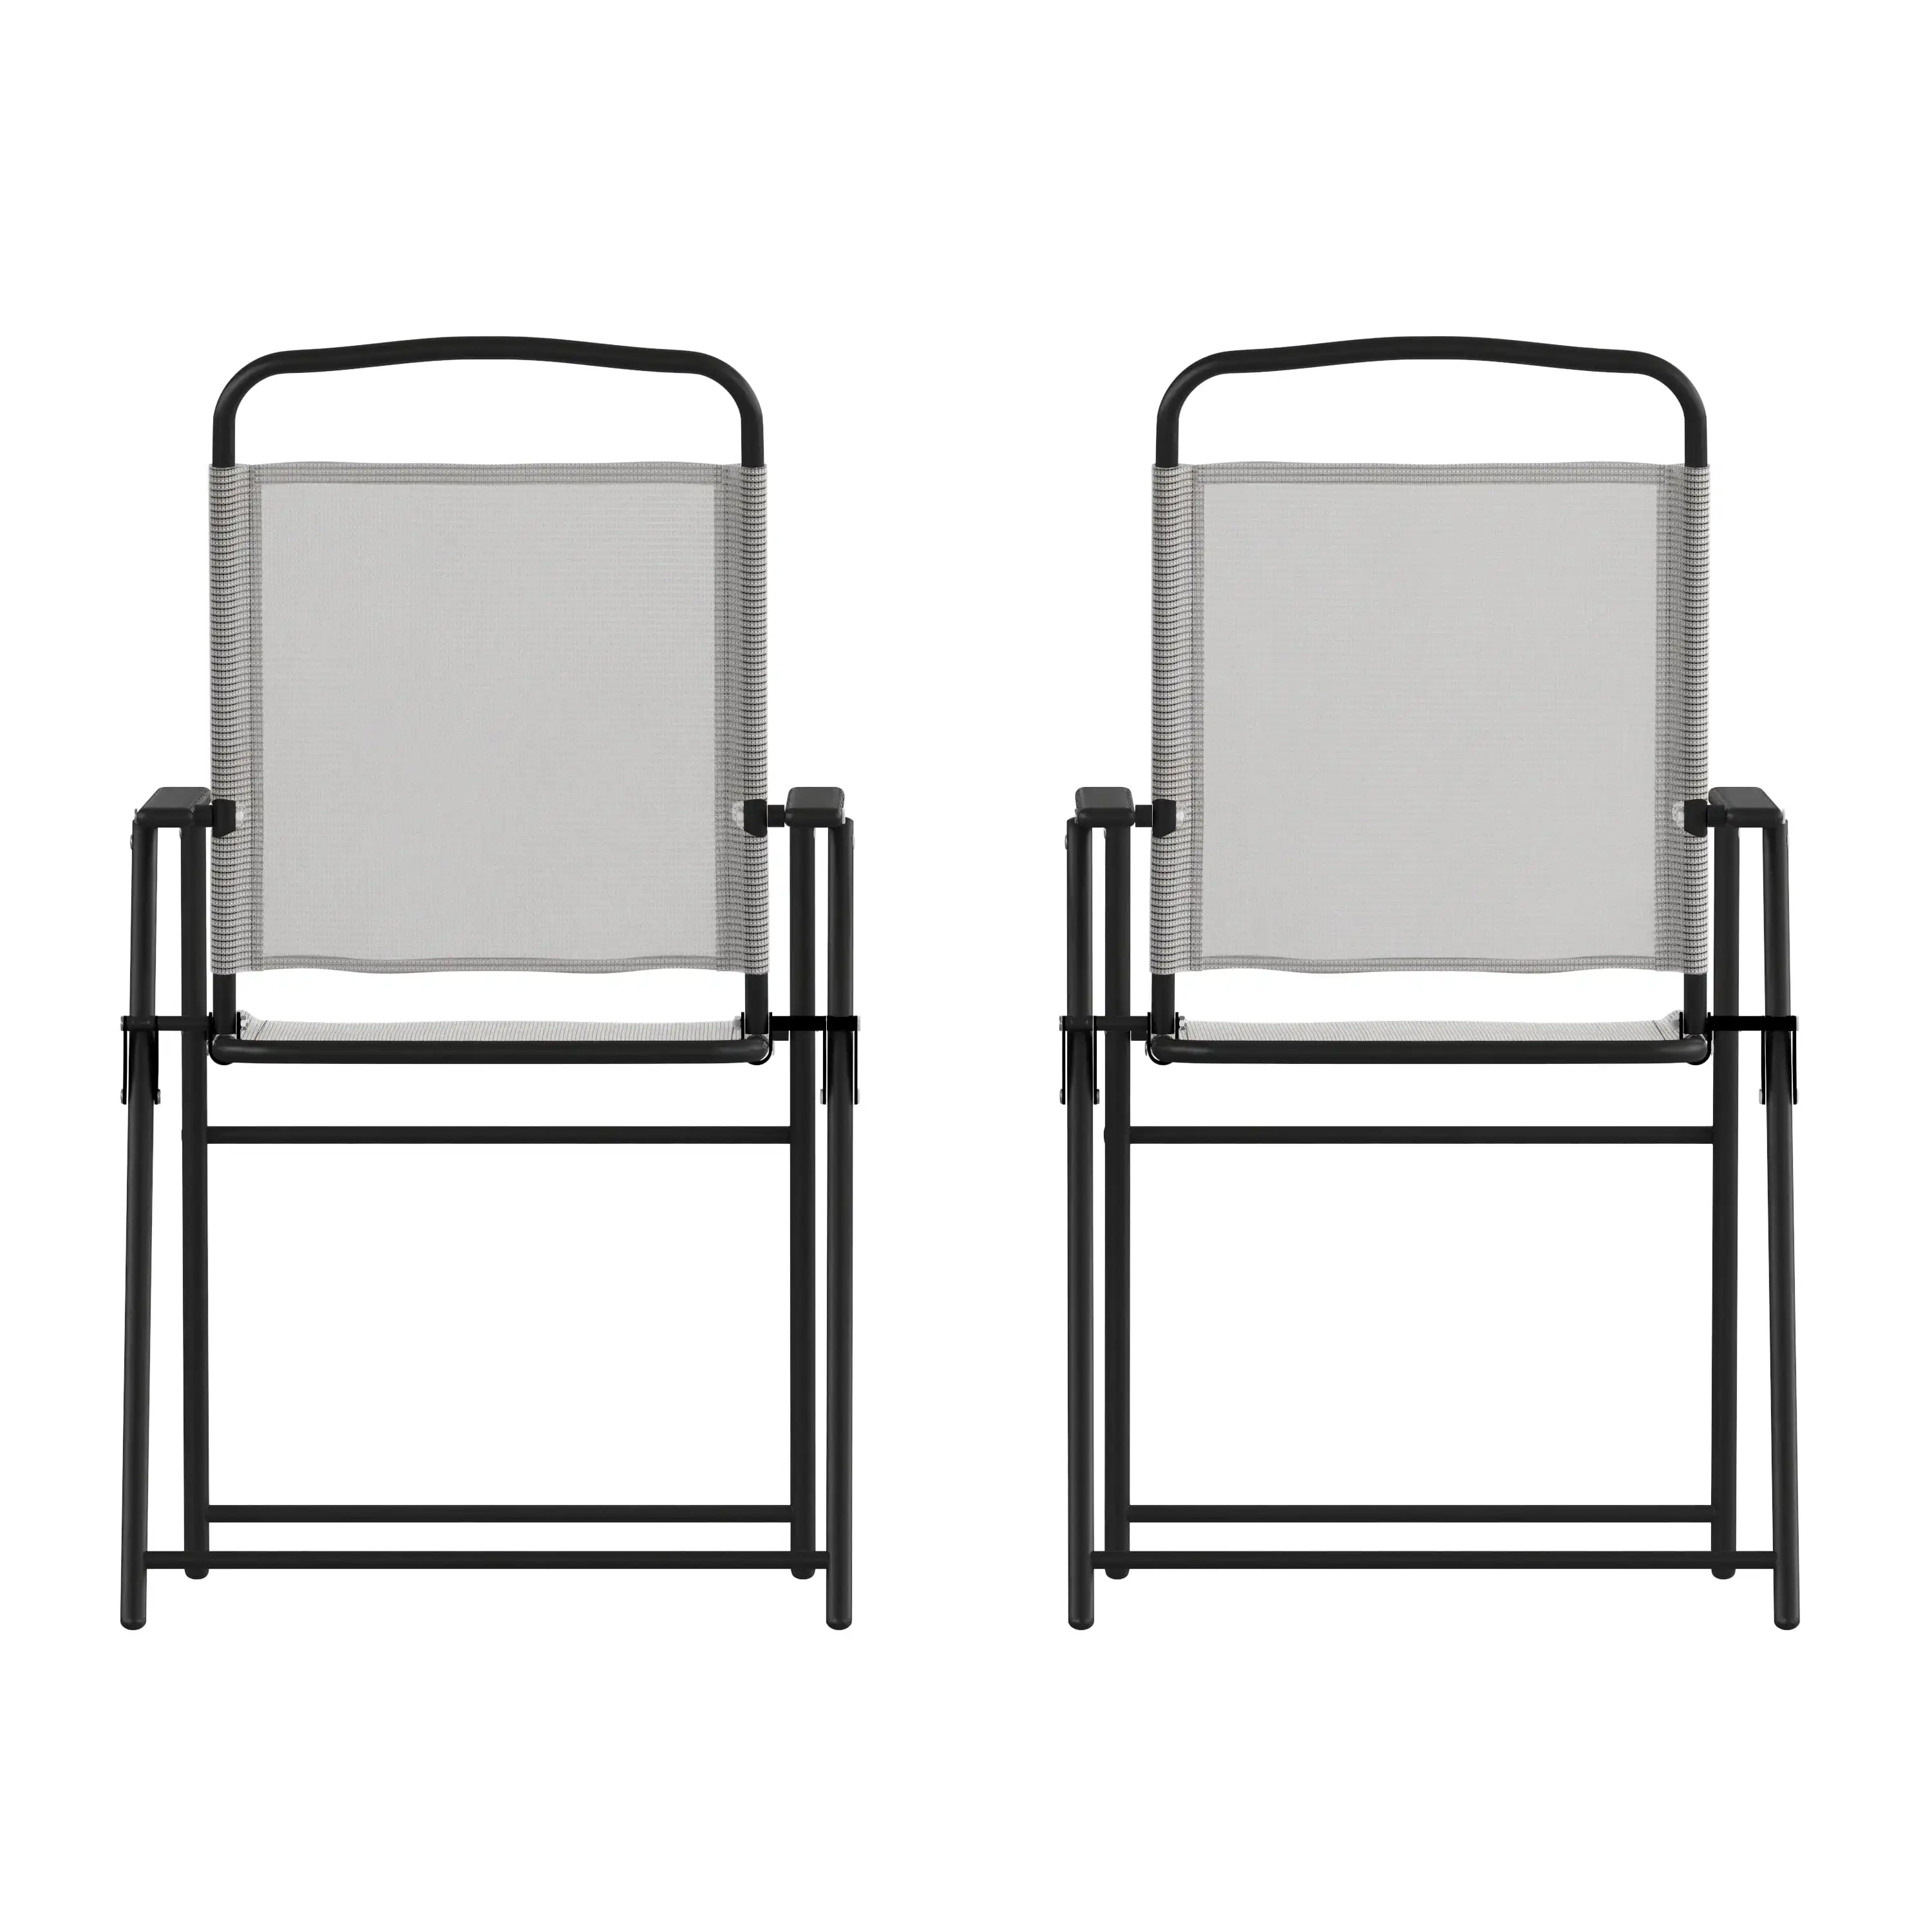 Набор мебели Flash из 2 складных стульев Mystic для патио, уличных садовых стульев из текстиля с подлокотниками серого цвета